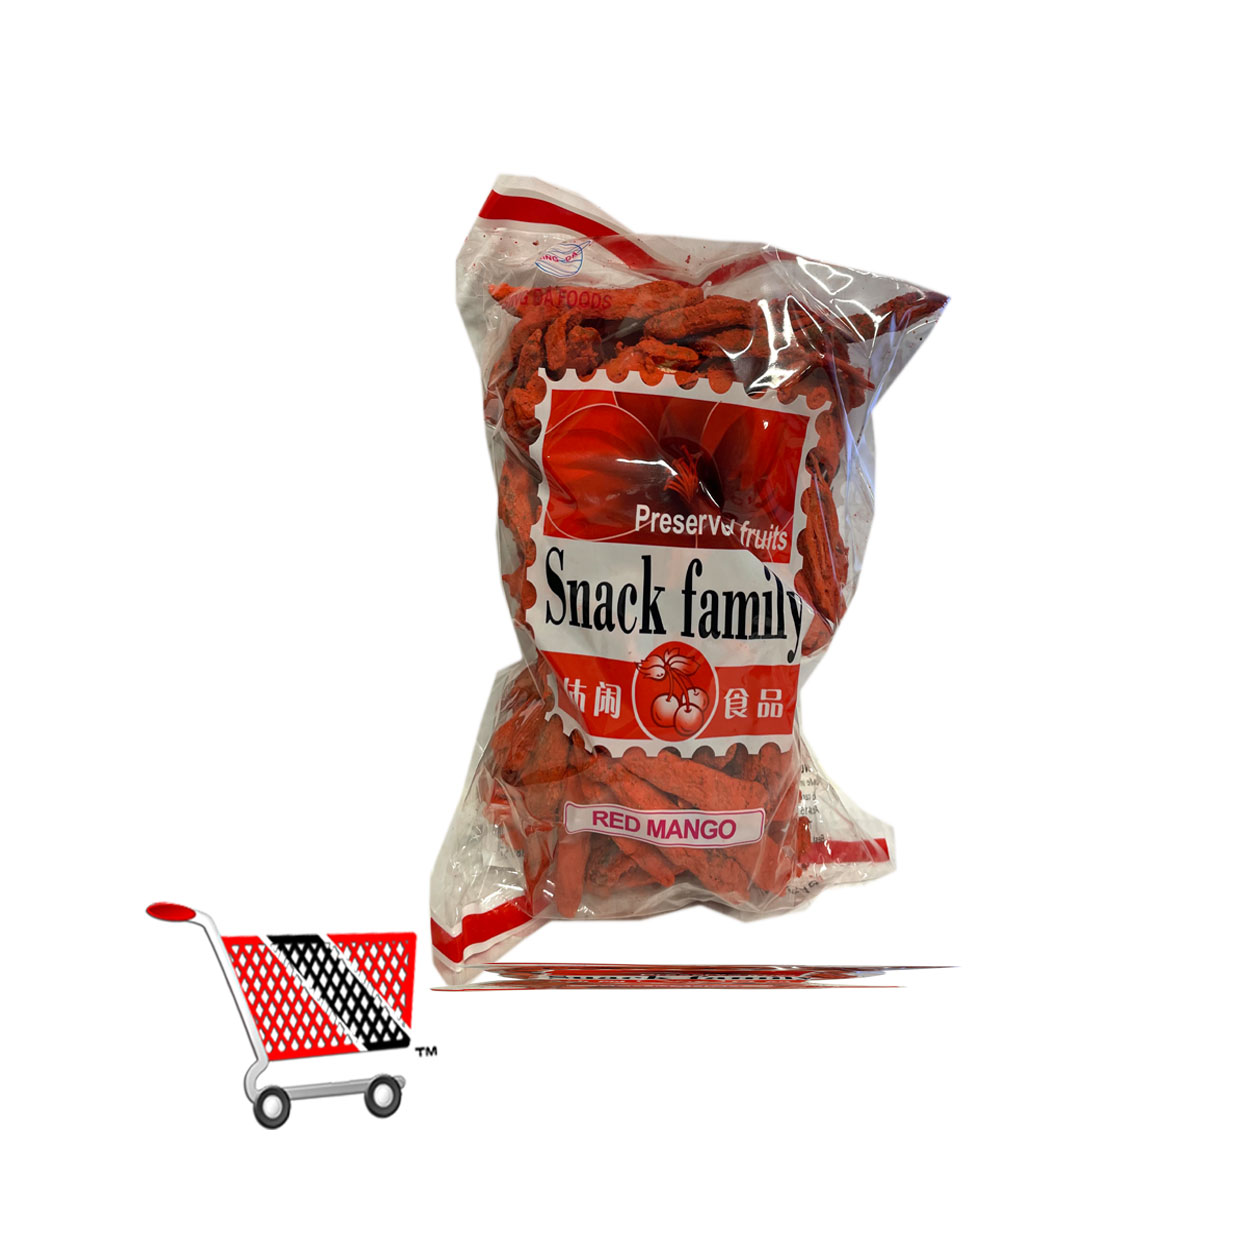 snack-family-red-mabgo.jpg